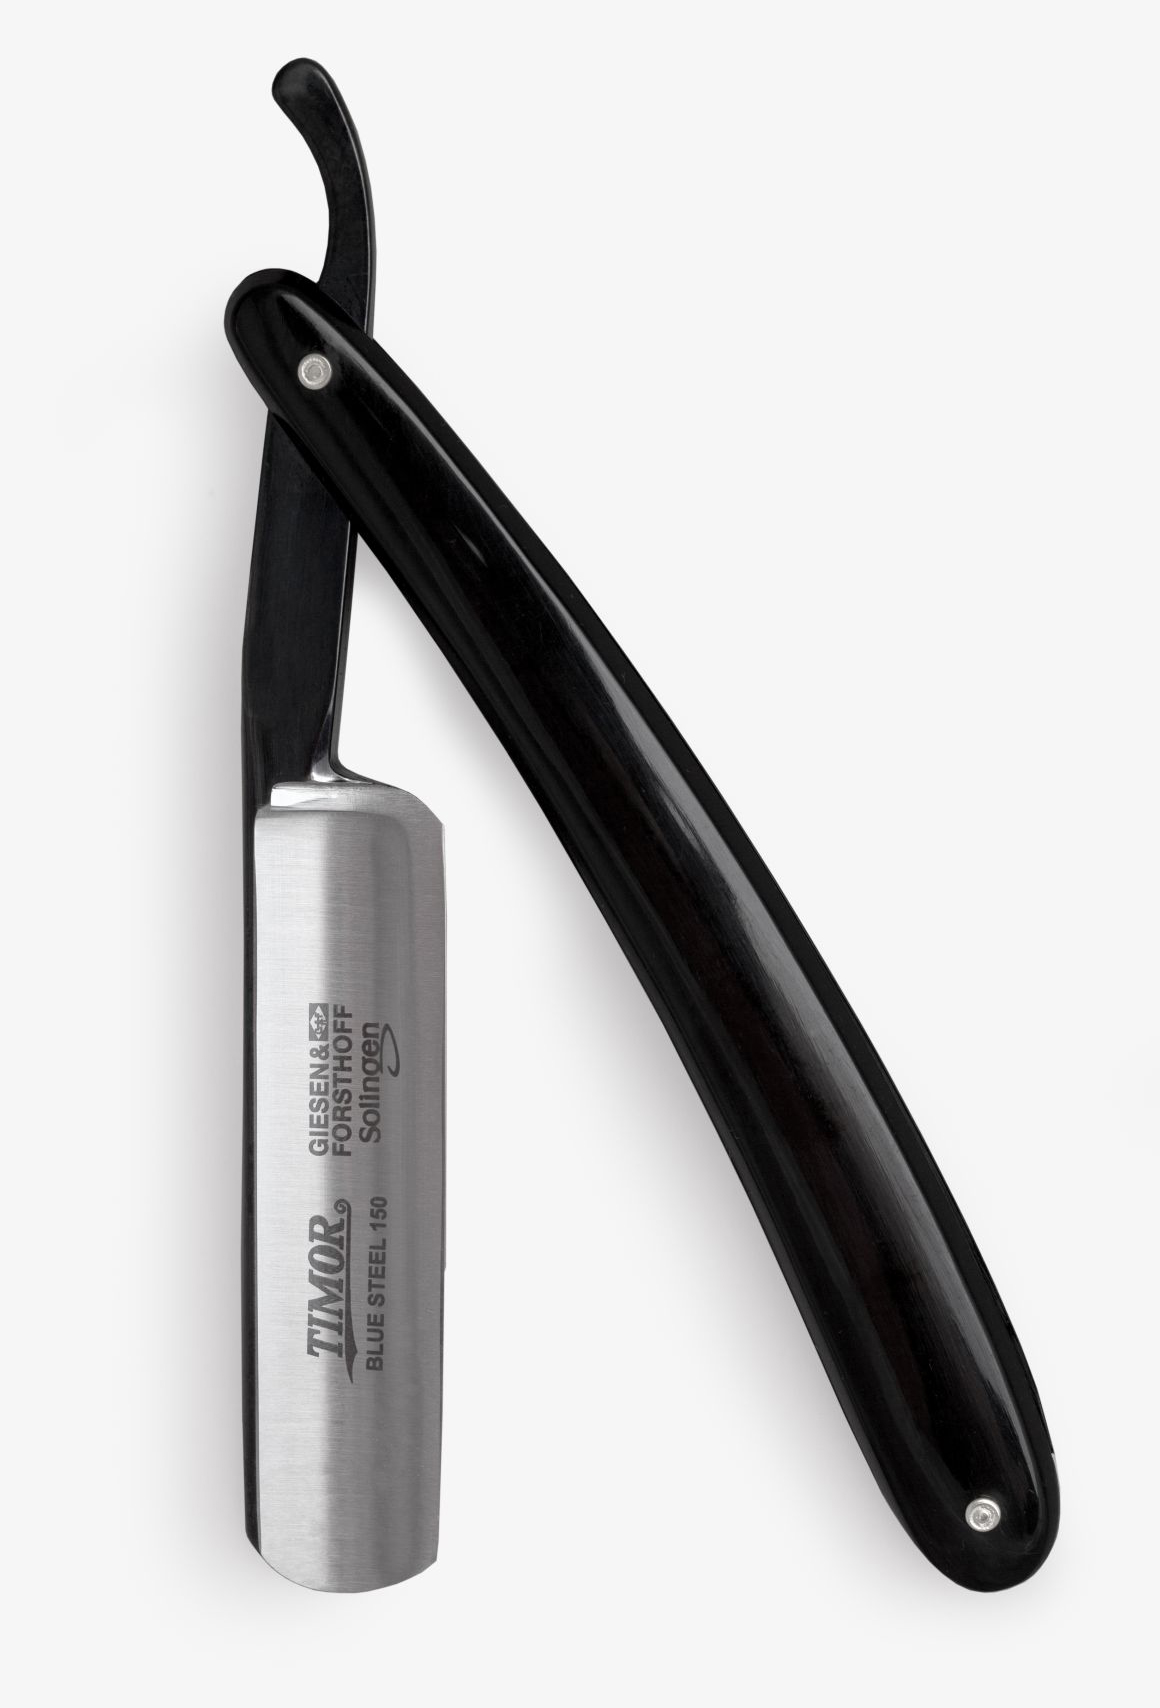 Rasiermesser Carbon 5/8 " von G & F fein geschlifen- Schalen schwarzbei bei ISS